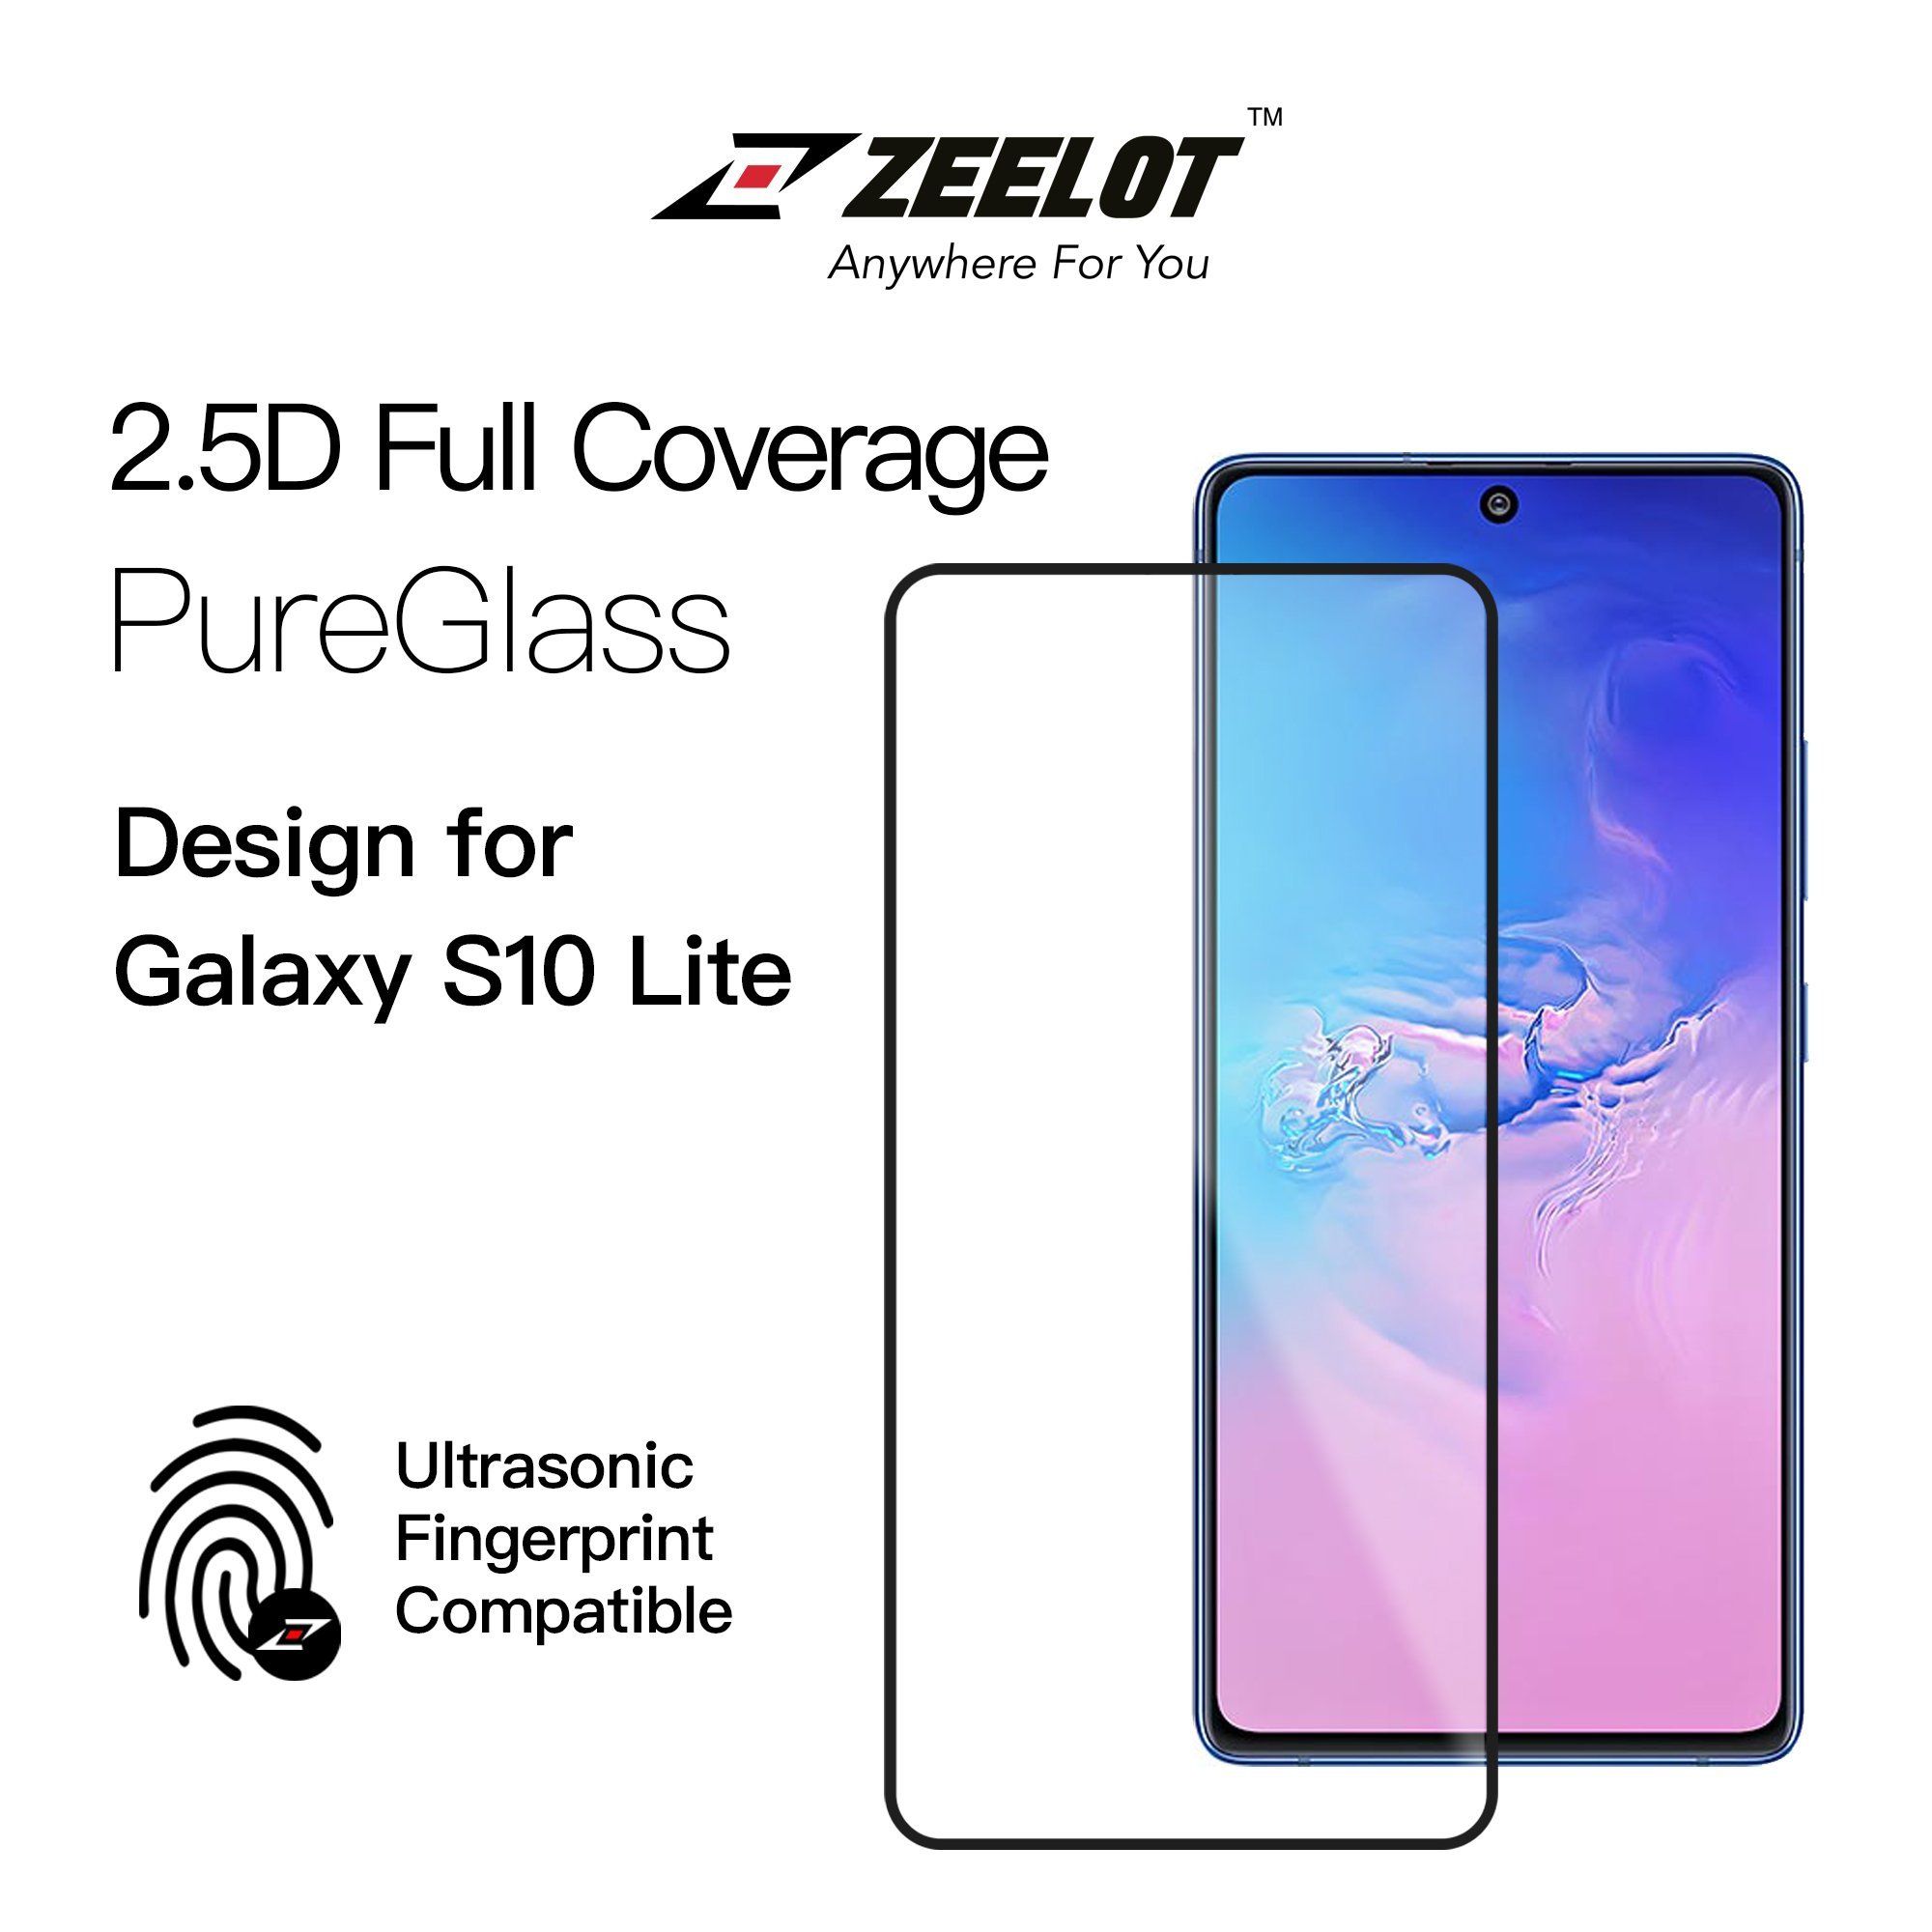 ZEELOT PureGlass 2.5D Tempered Glass Screen Protector for Samsung Galaxy S10 Lite, Clear S10 Lite Glass ZEELOT 